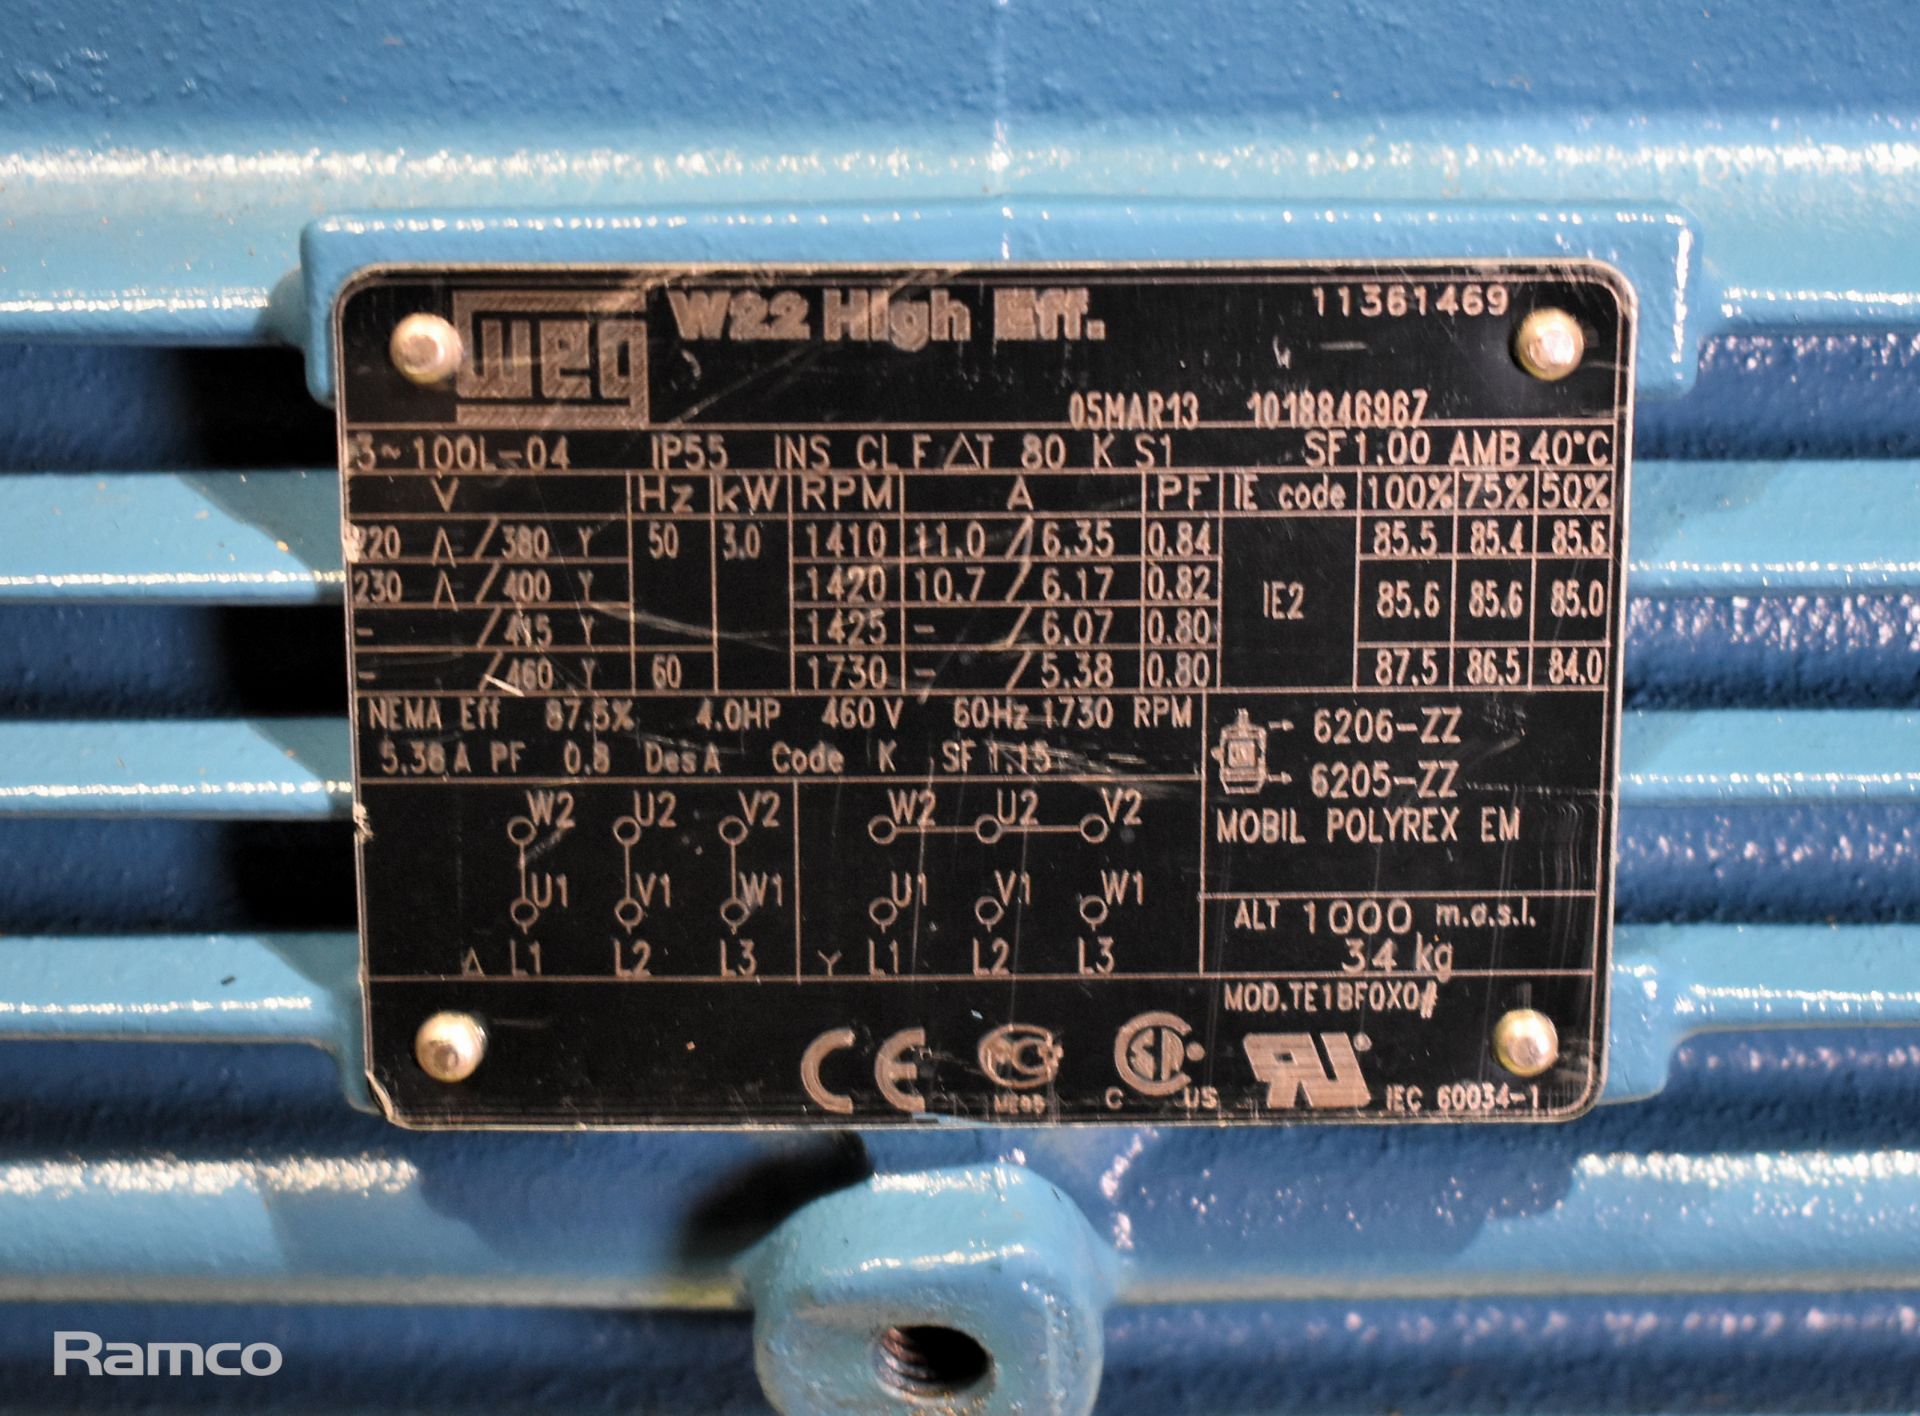 WEG 100L-04 11361469 3.0 kW 3 phase electric motor - Image 2 of 3